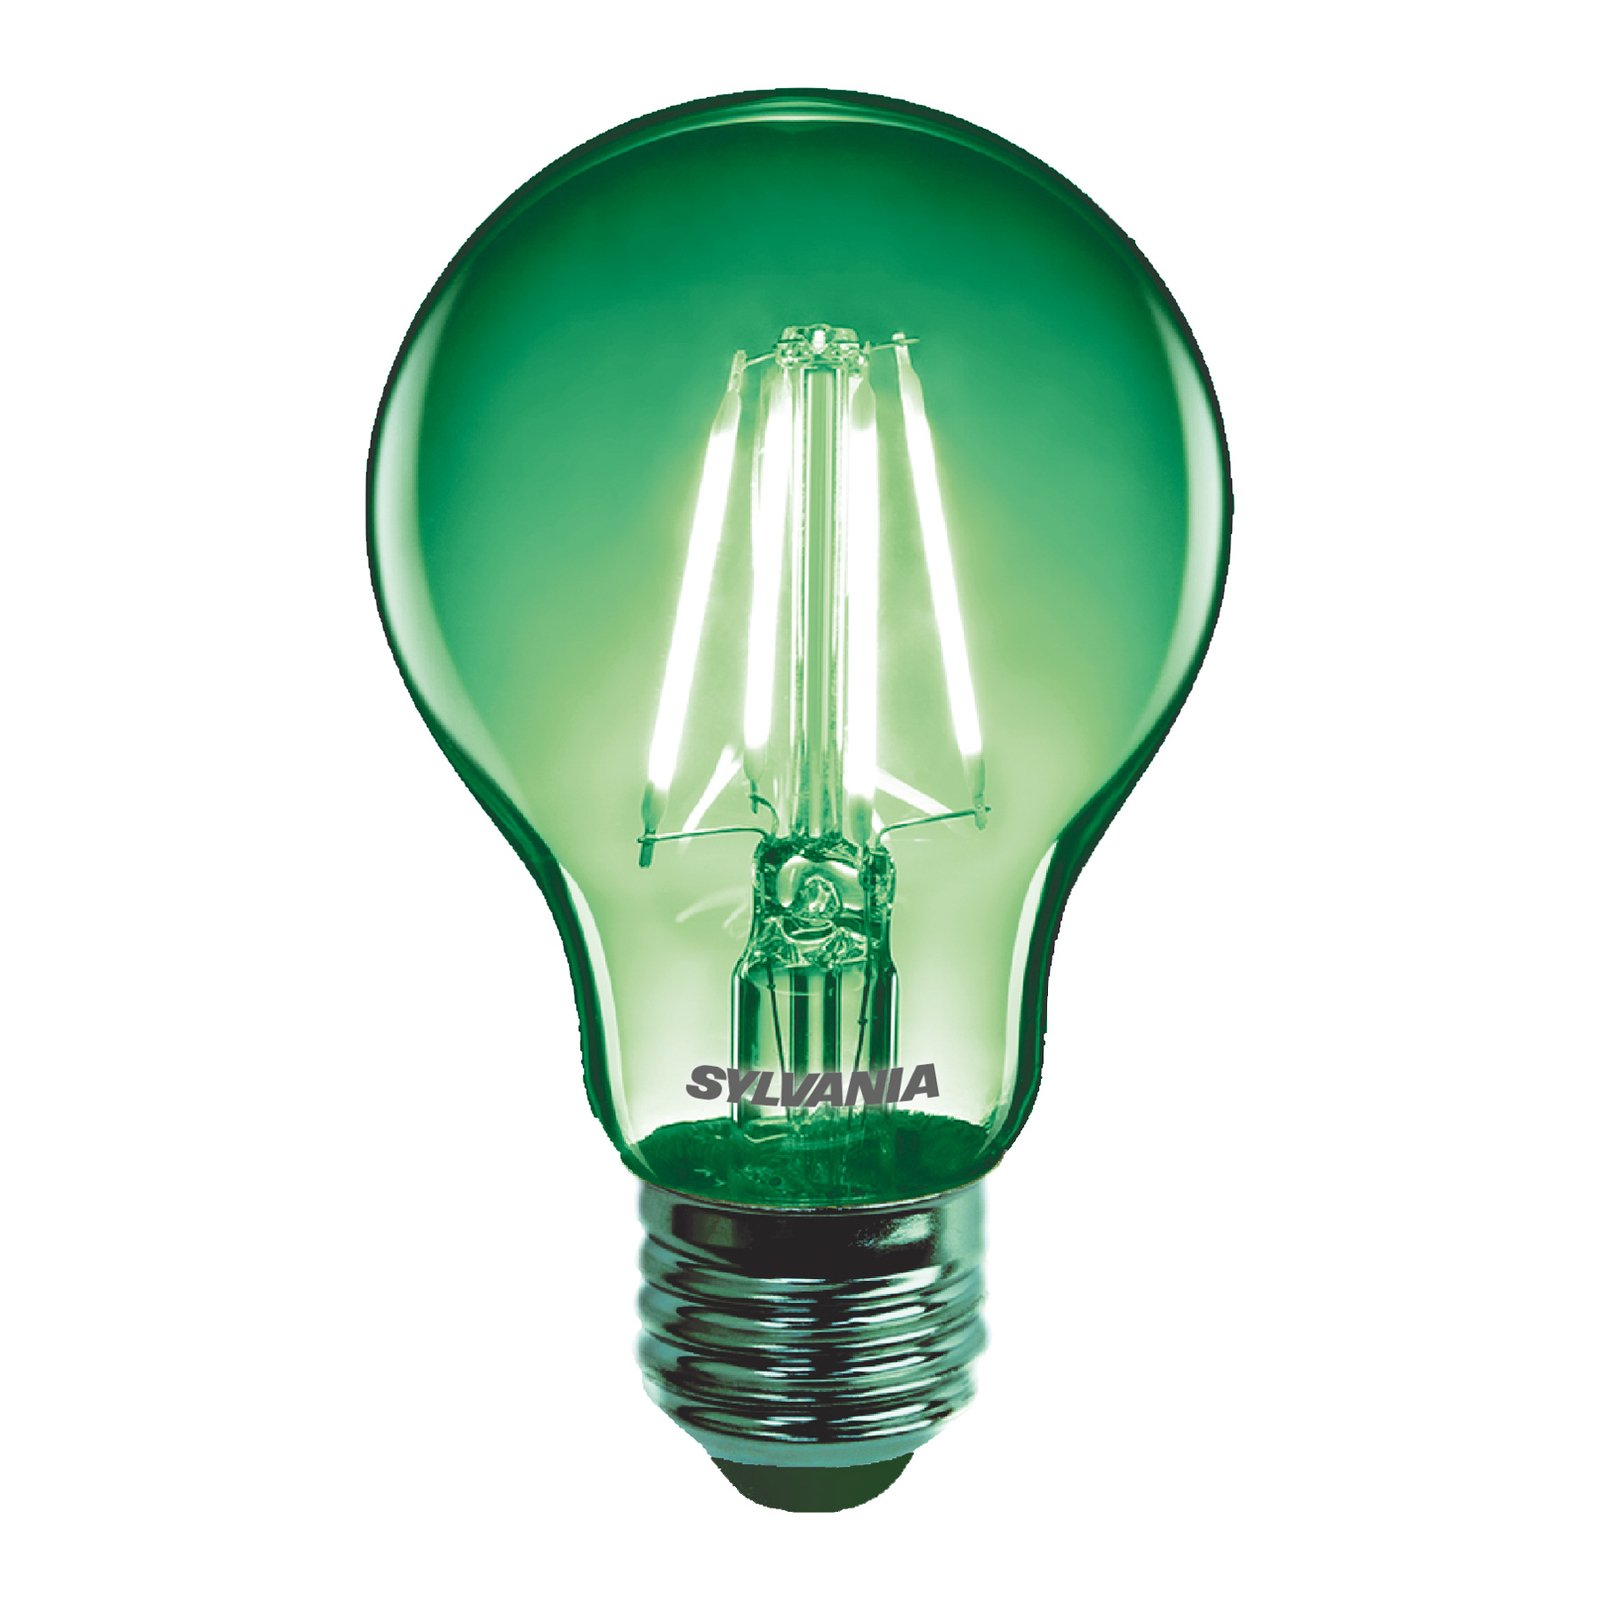 Sylvania ToLEDo rétro ampoule LED E27 4,1 W verte